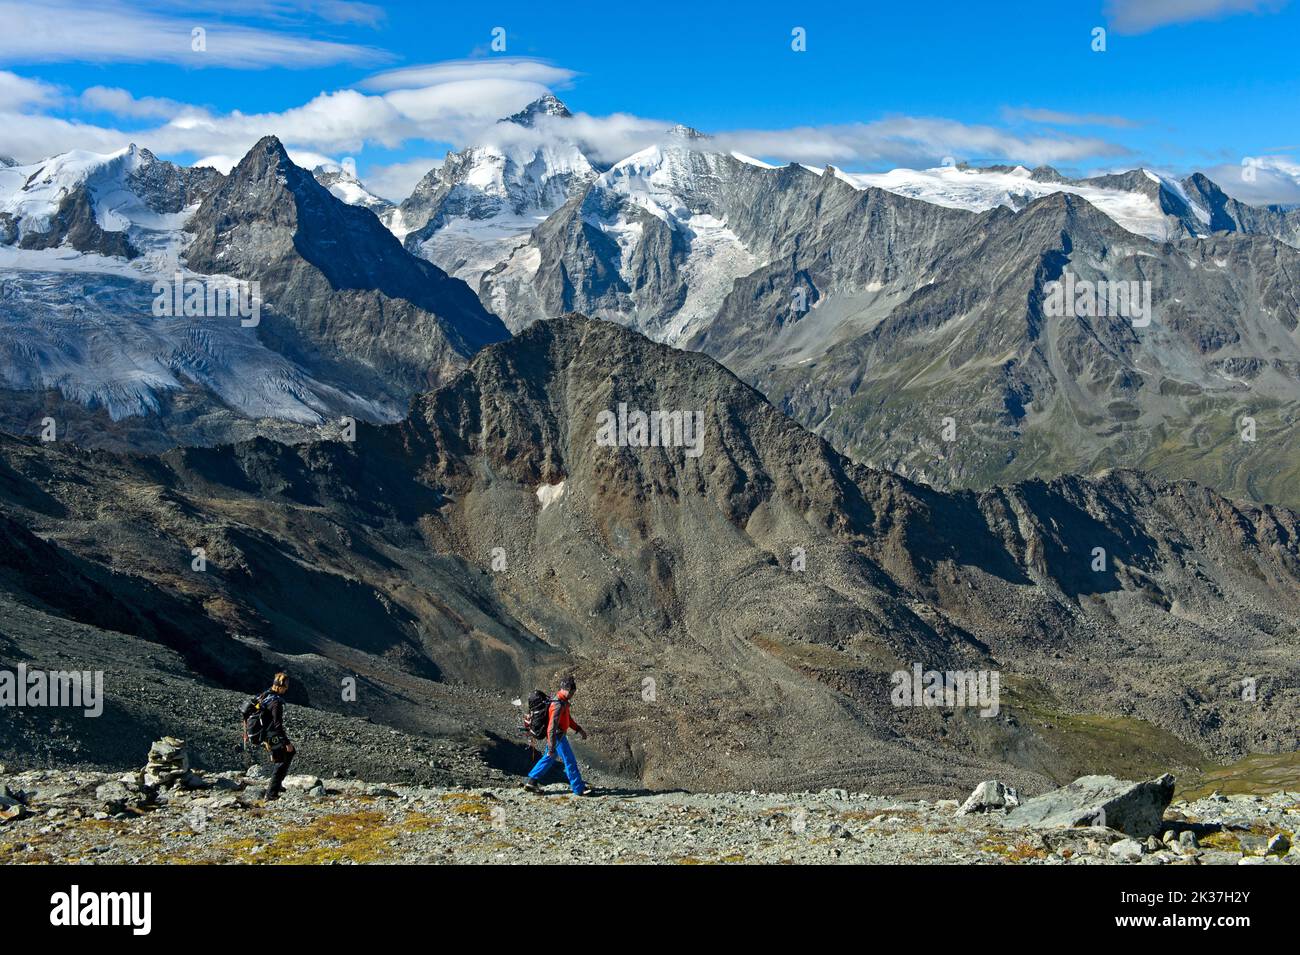 Randonnées pédestres en montagne au coeur des Alpes valaisannes, Zinal, Val d'Anniviers, Valais, Suisse Banque D'Images